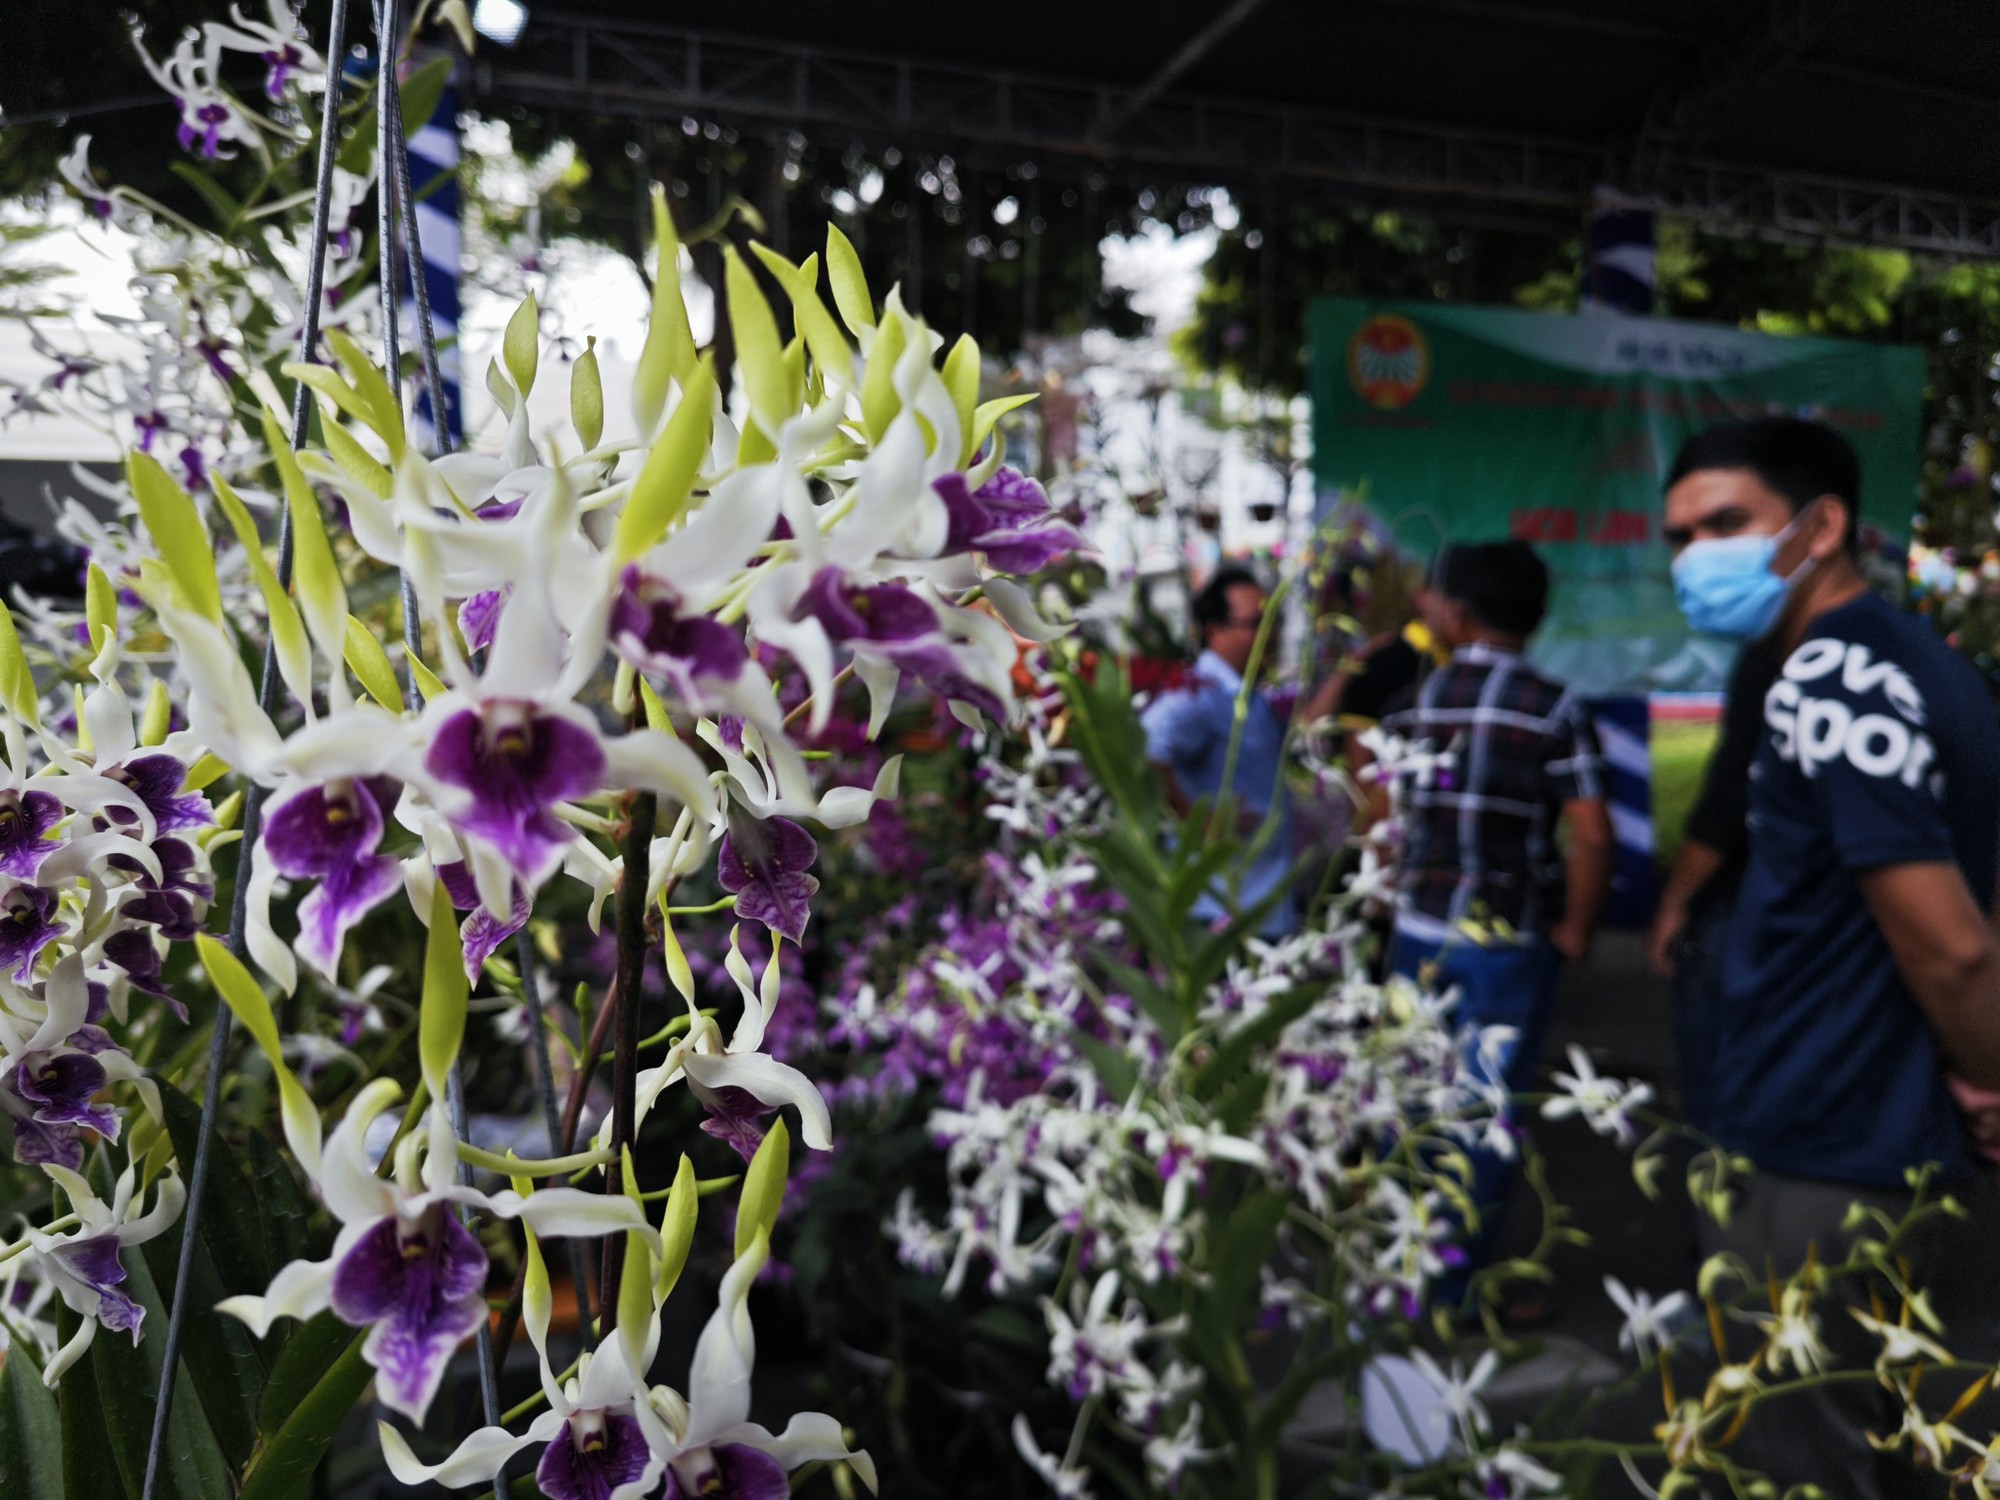 Ngỡ ngàng với hoa đẹp tại hội chợ sản phẩm nông nghiệp - Ảnh 6.